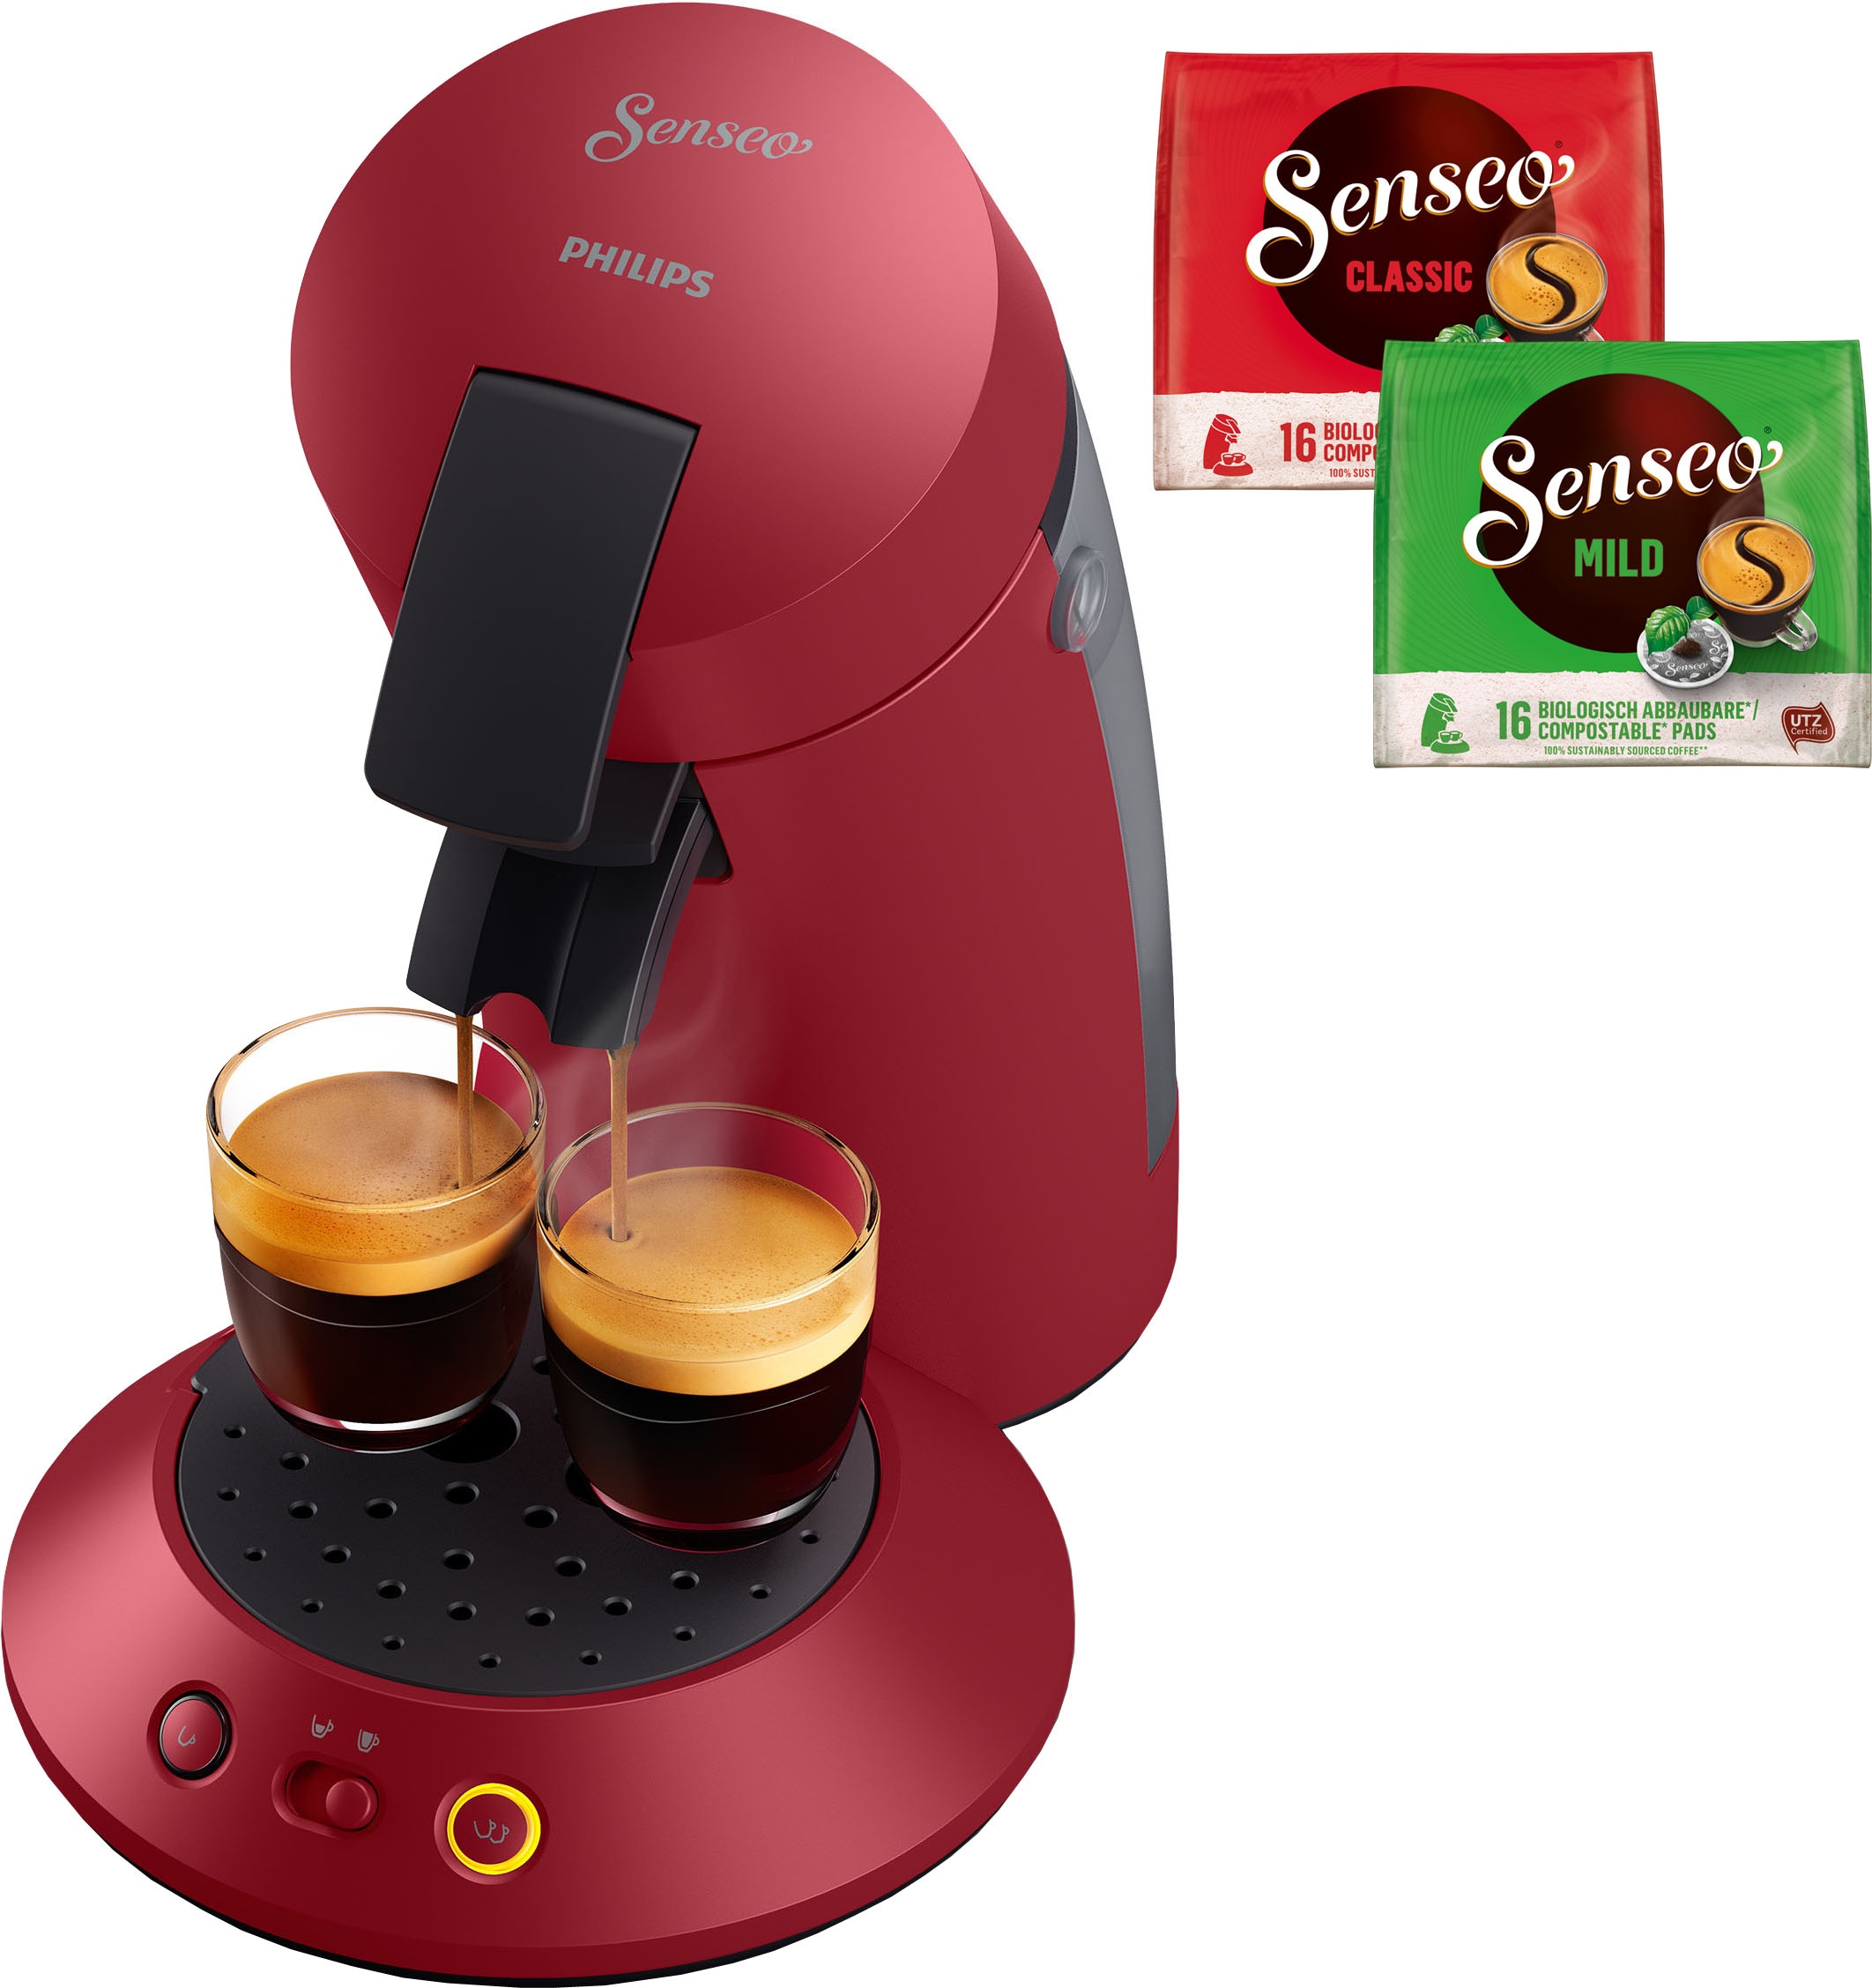 Philips Senseo Kaffeepadmaschine »Switch HD6592/84«, 1 l Kaffeekanne, inkl.  Kaffeepaddose im Wert von 9,90 € UVP per Rechnung | BAUR